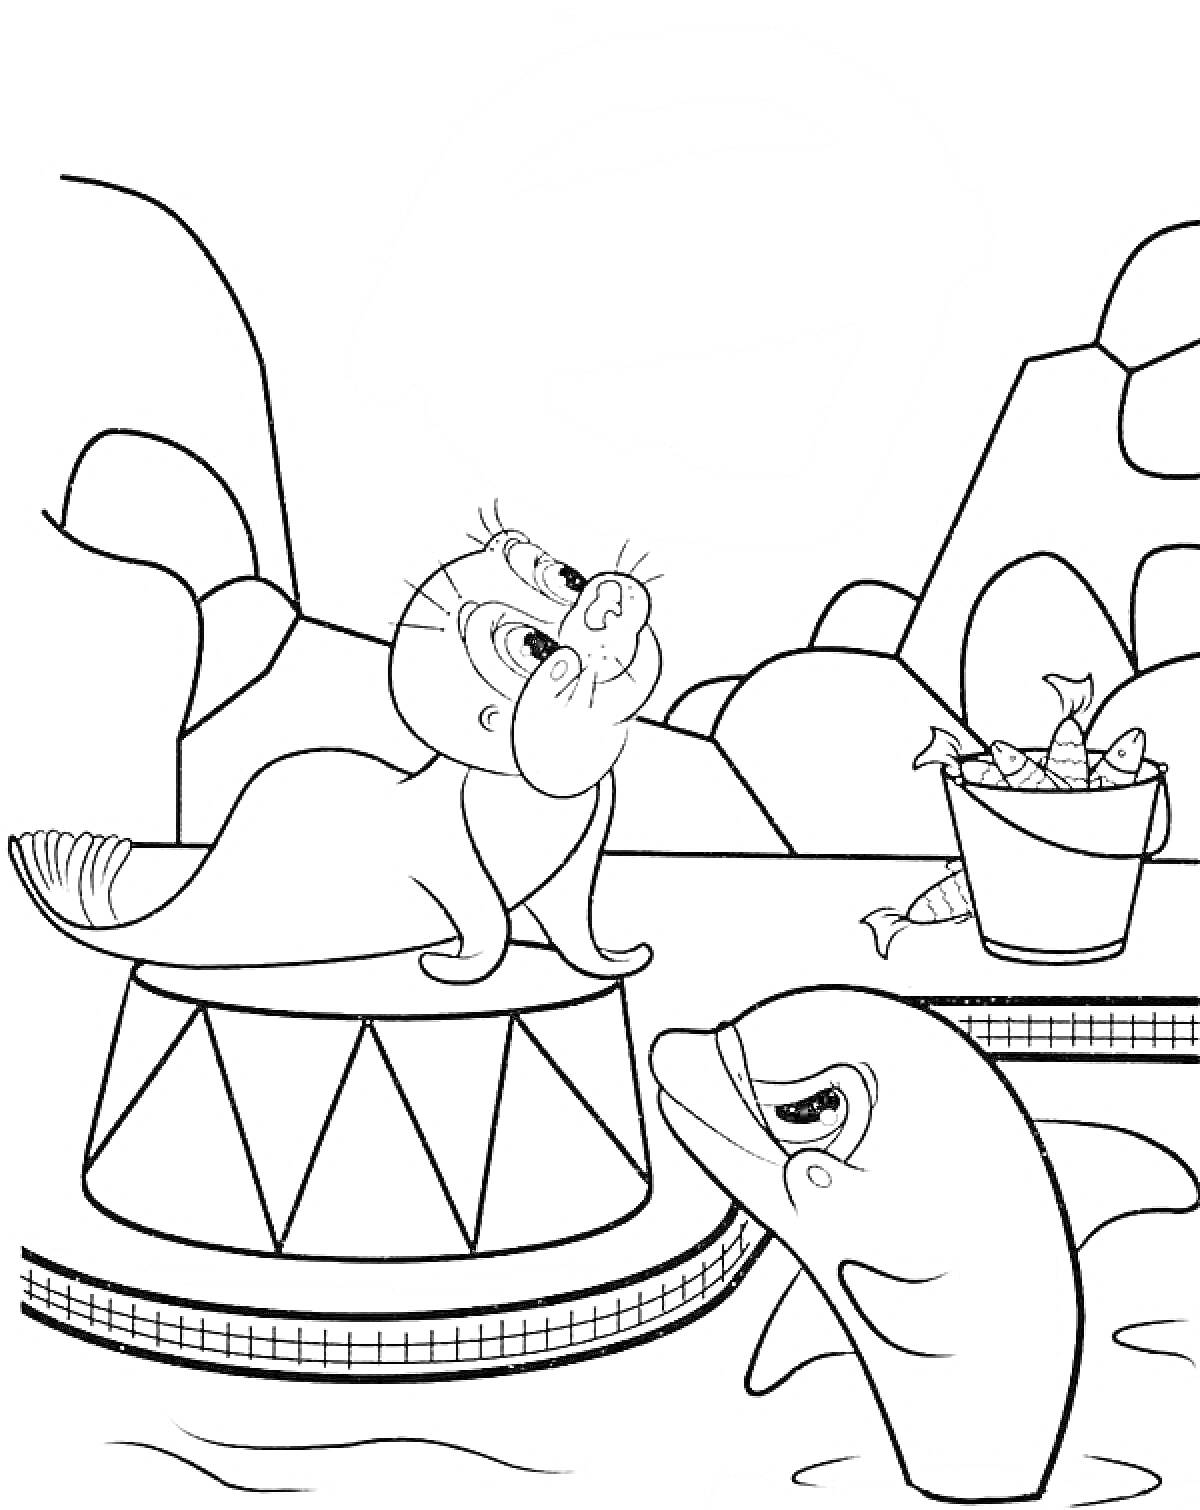 Раскраска Тюлень на арене с дельфином и ведром рыбы на фоне скал